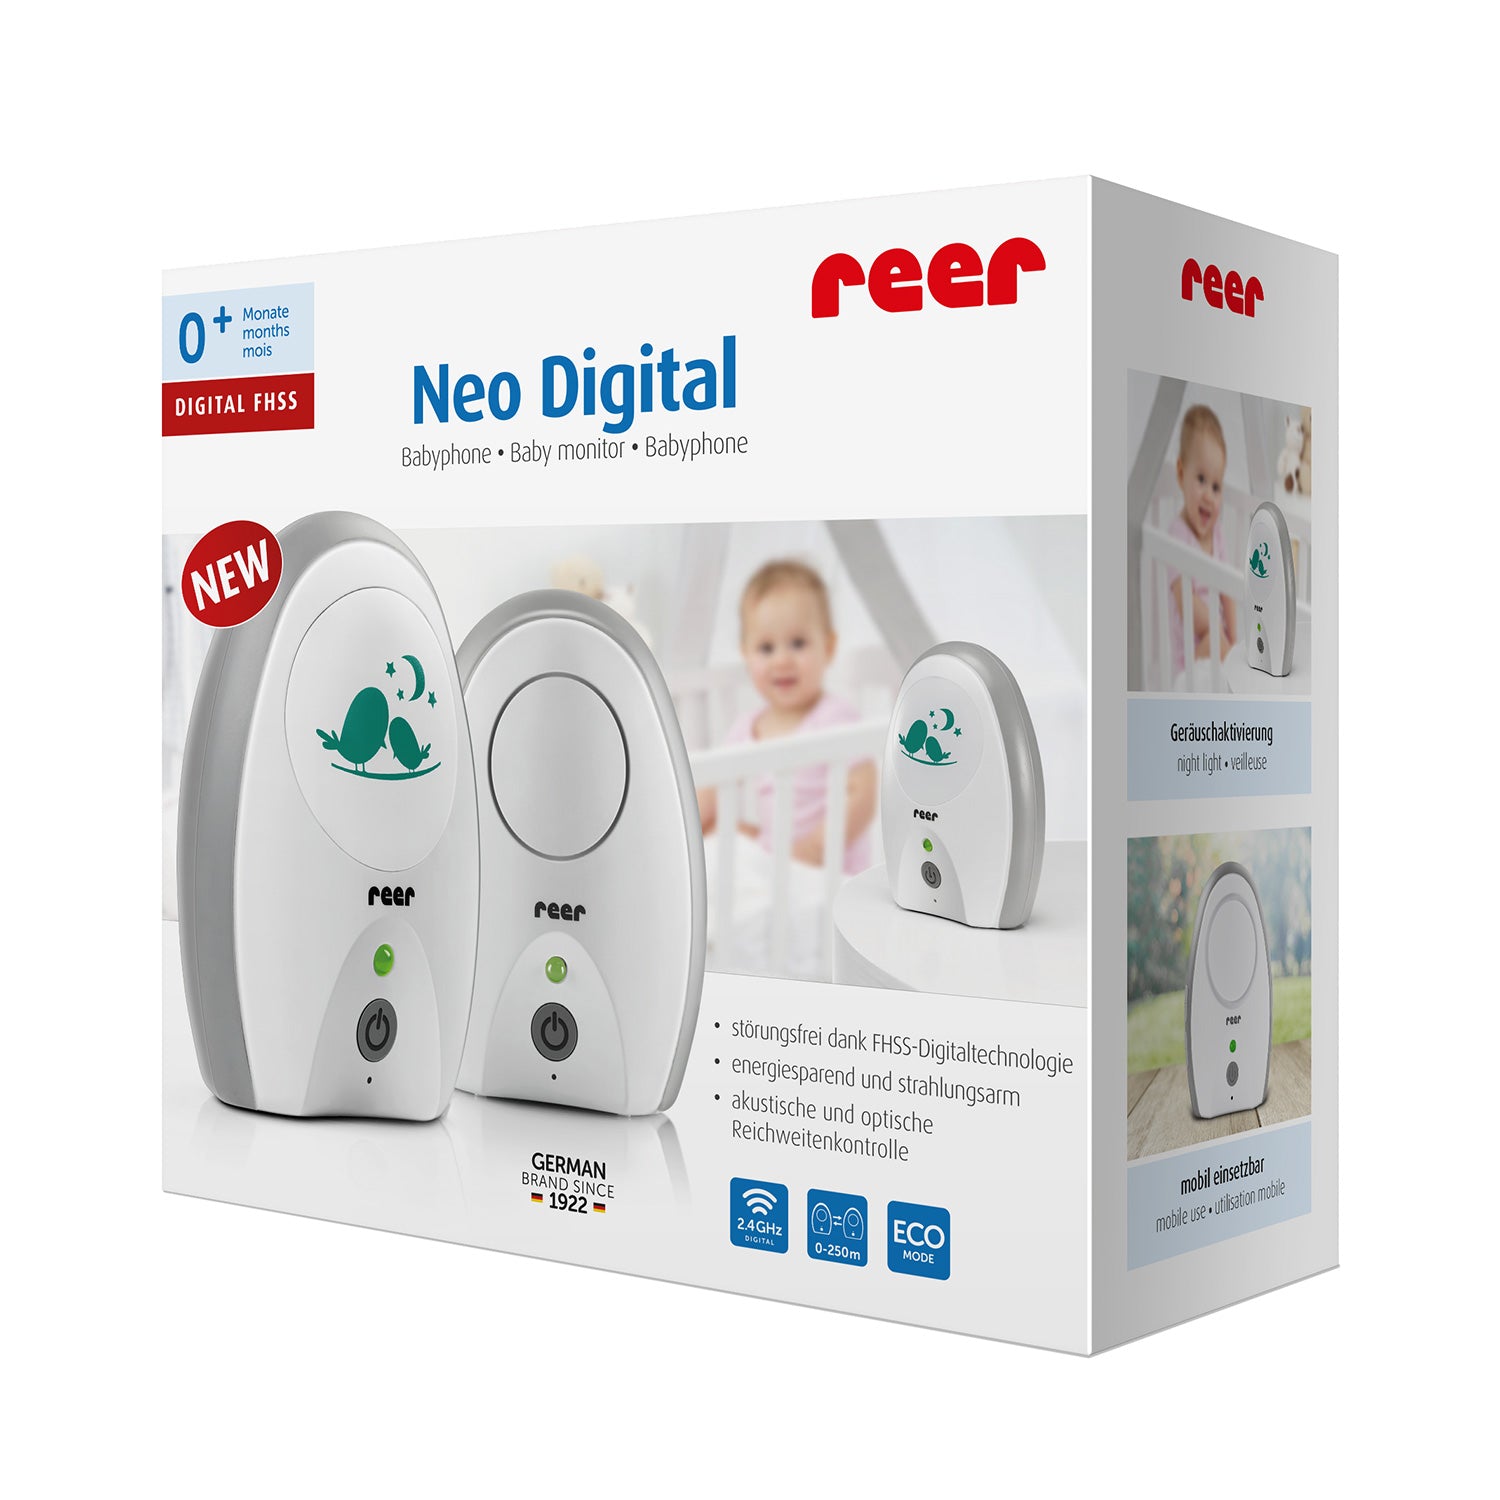 Reer Neo Digital baby monitor